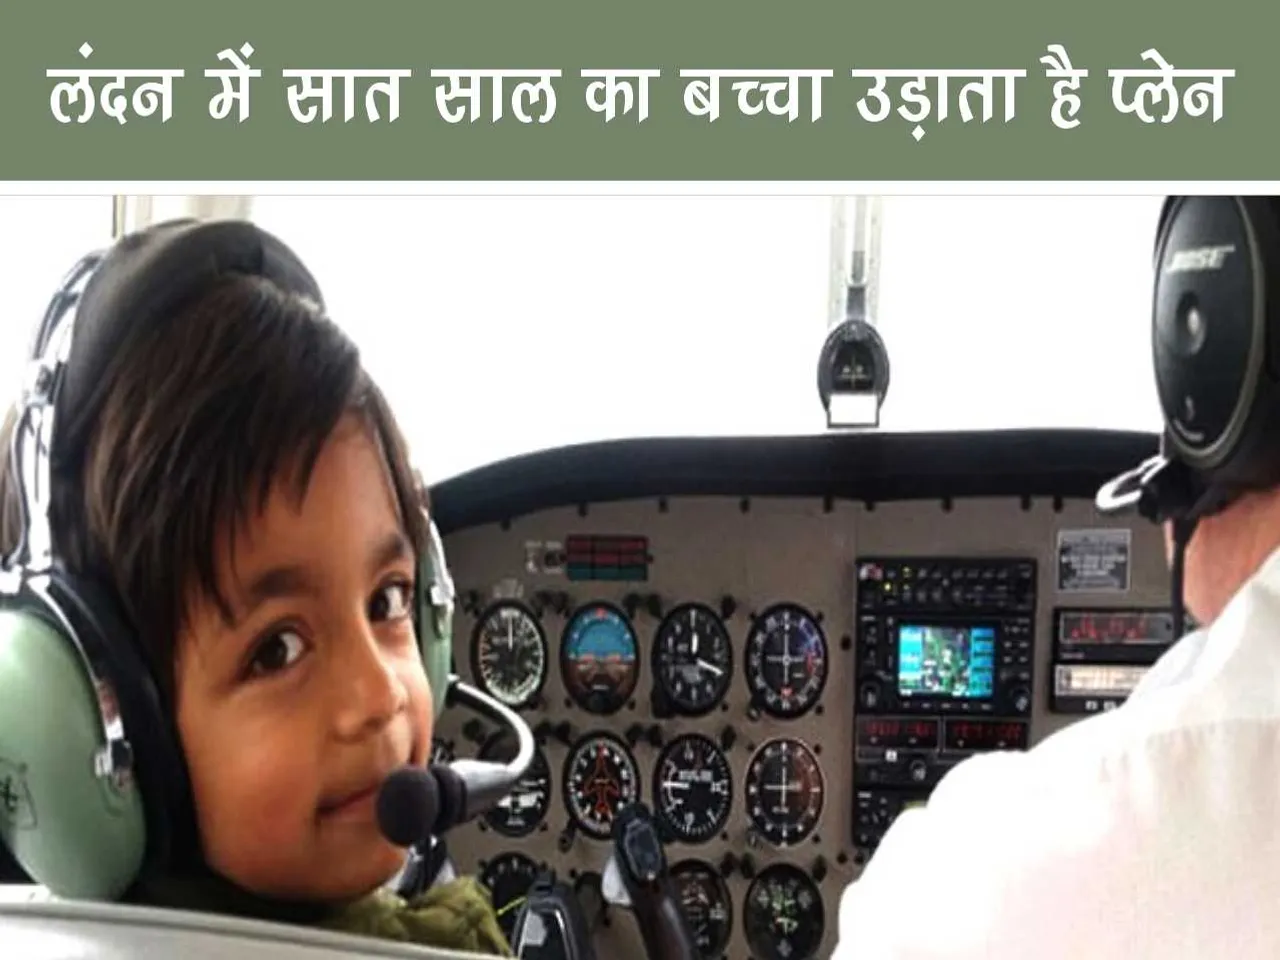 7 year old kid flying aeroplane